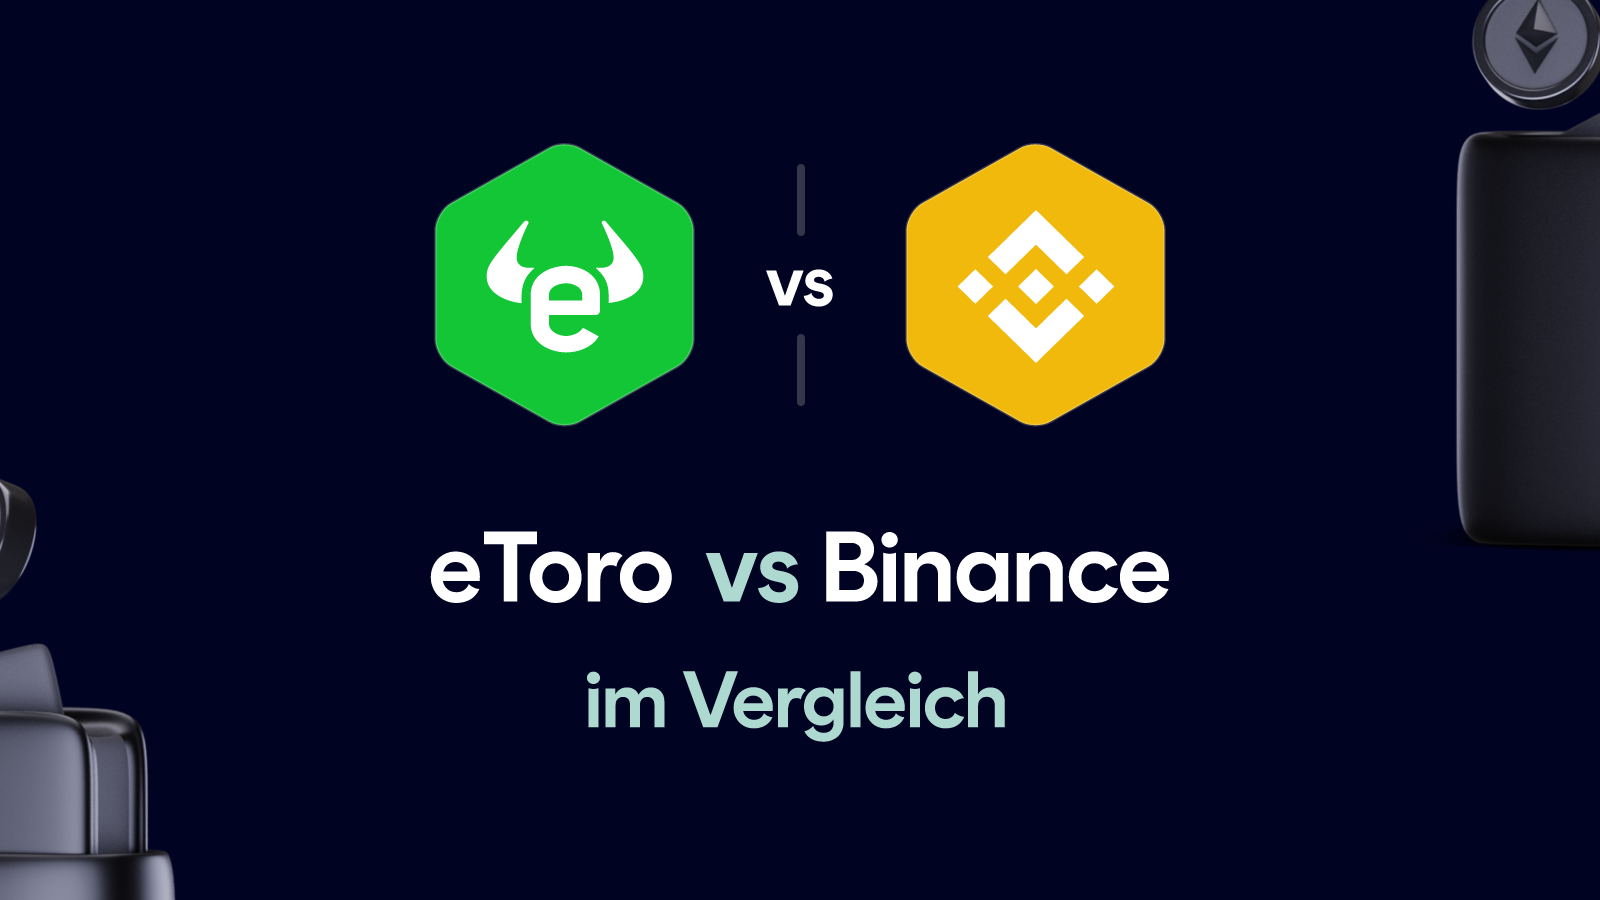 eToro vs Binance im Vergleich